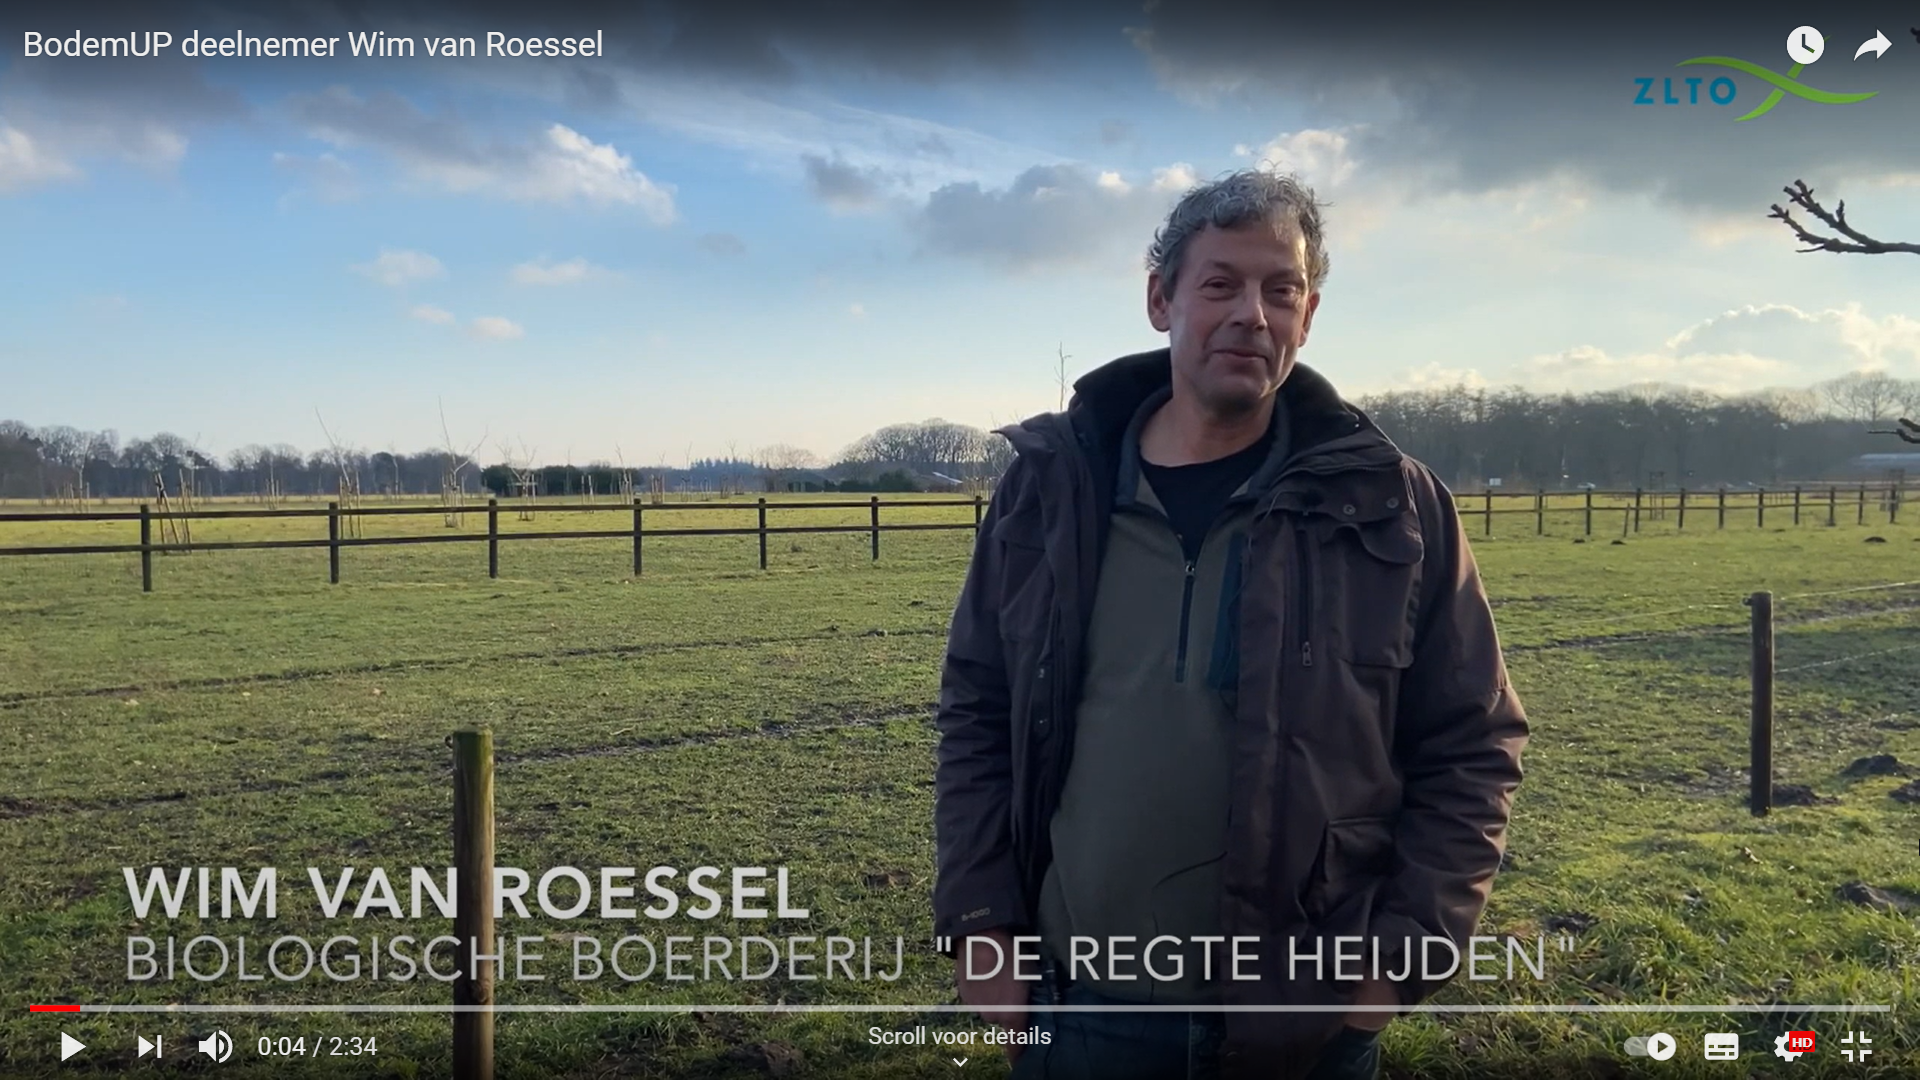 BodemUP Wim van Roessel Youtube